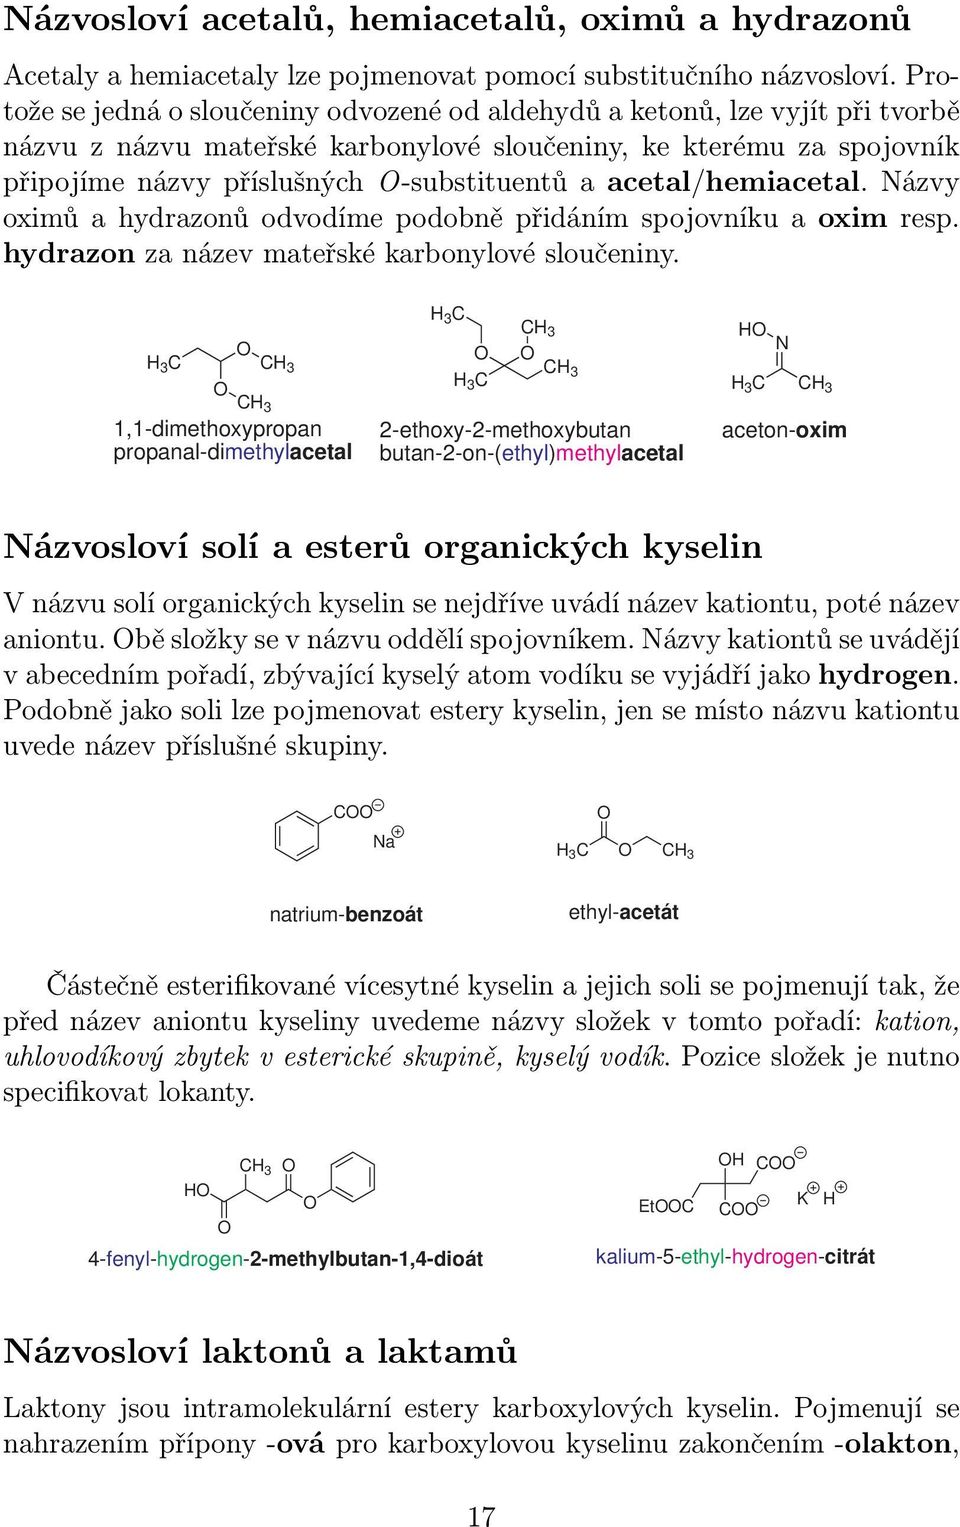 acetal/hemiacetal. ázvy oximů a hydrazonů odvodíme podobně přidáním spojovníku a oxim resp. hydrazon za název mateřské karbonylové sloučeniny.